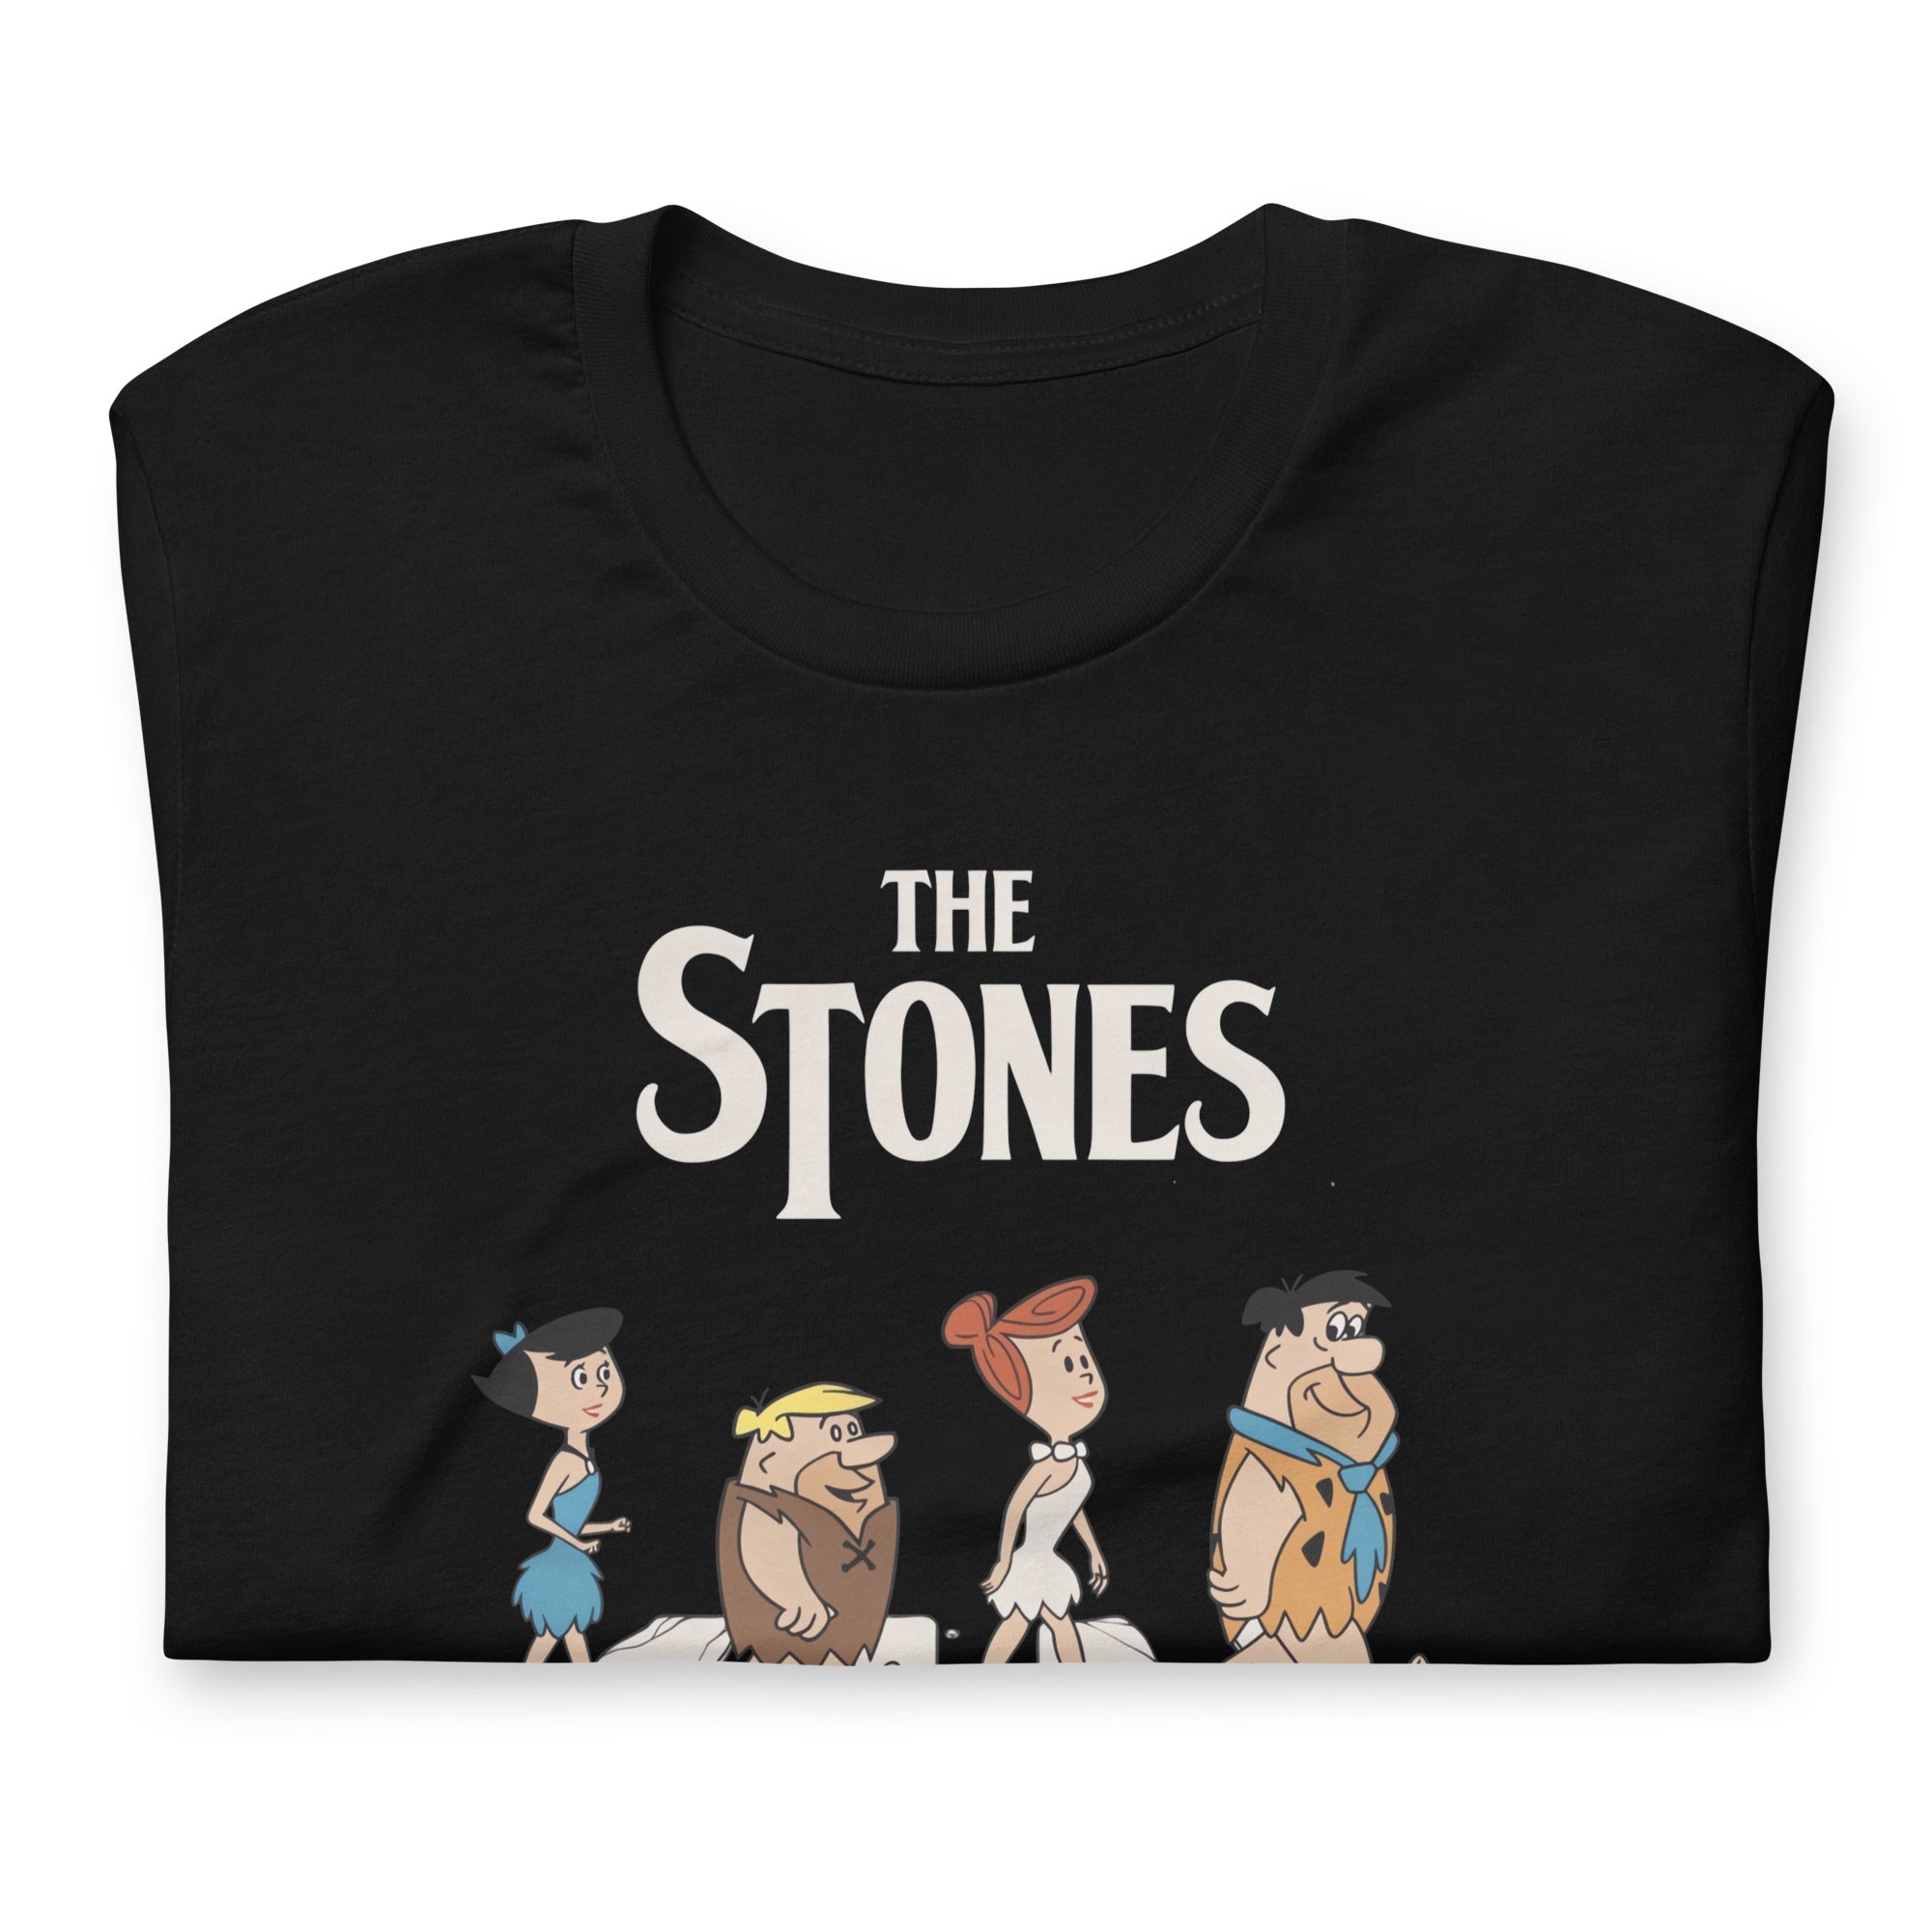 ¡Compra el mejor merchandising en Superstar! Encuentra diseños únicos y de alta calidad, Playera The Stones